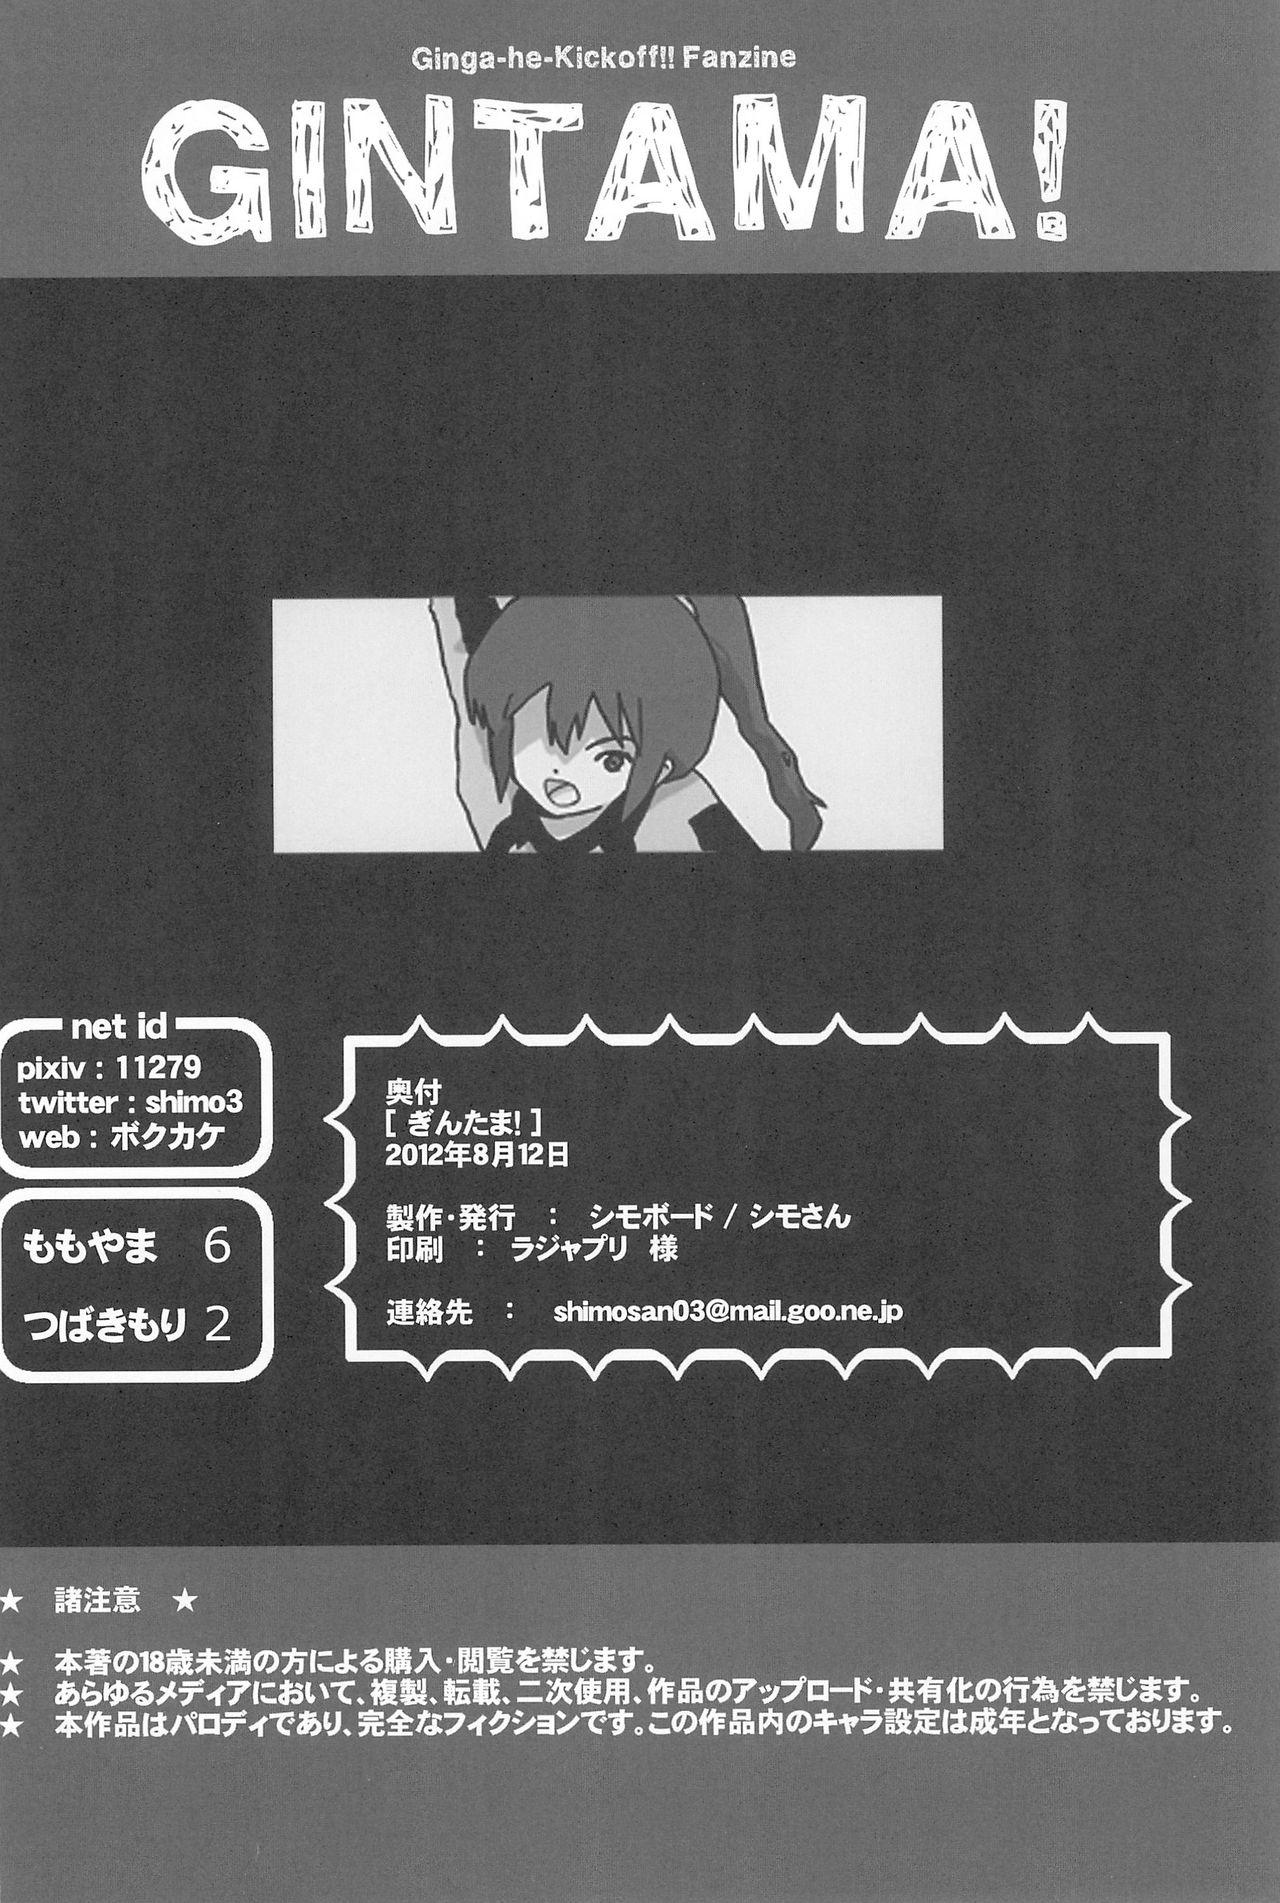 Kinky Gintama! - Ginga e kickoff Girl Girl - Page 21